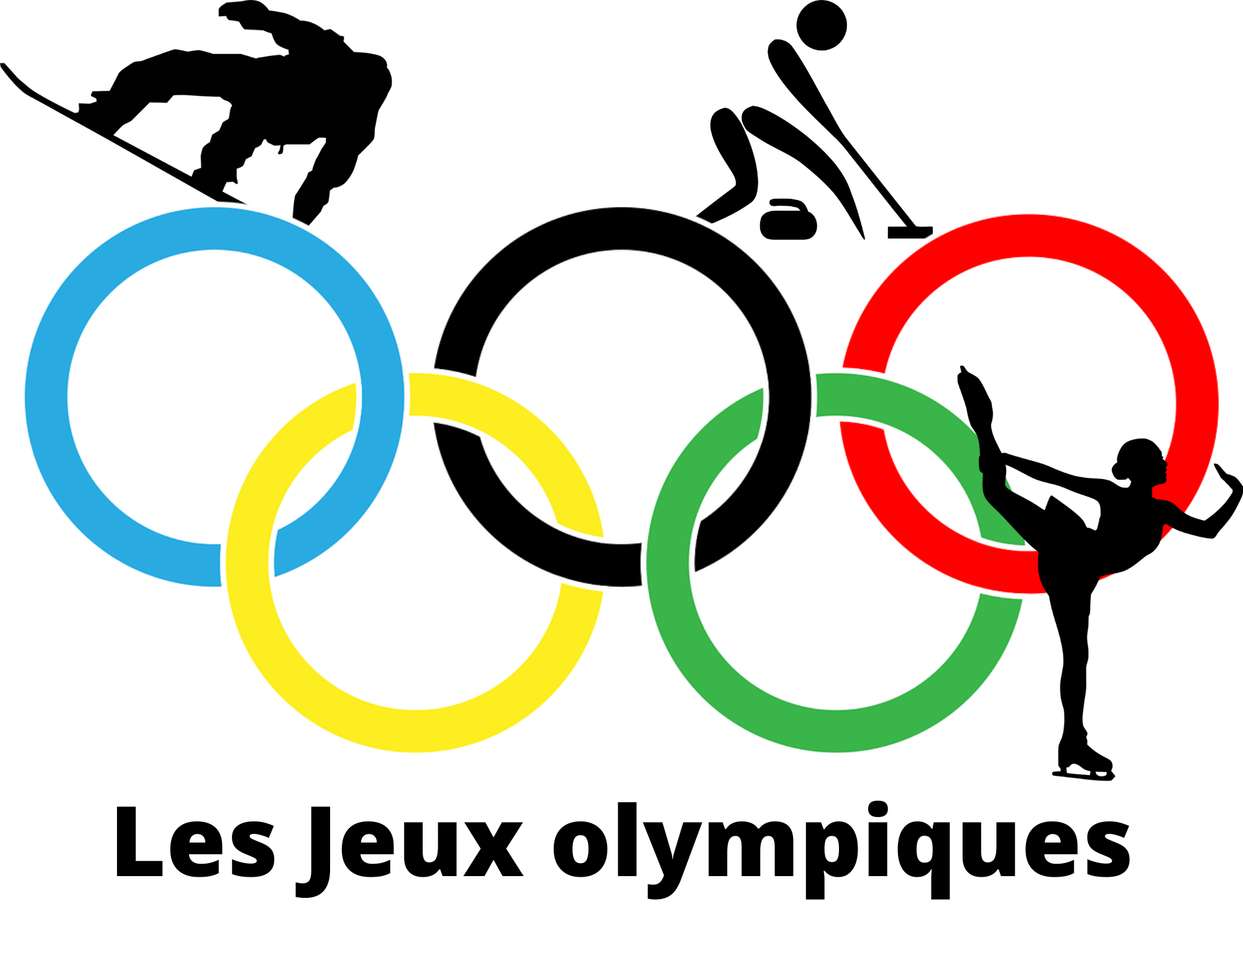 Les jeux olympiques puzzle online a partir de fotografia